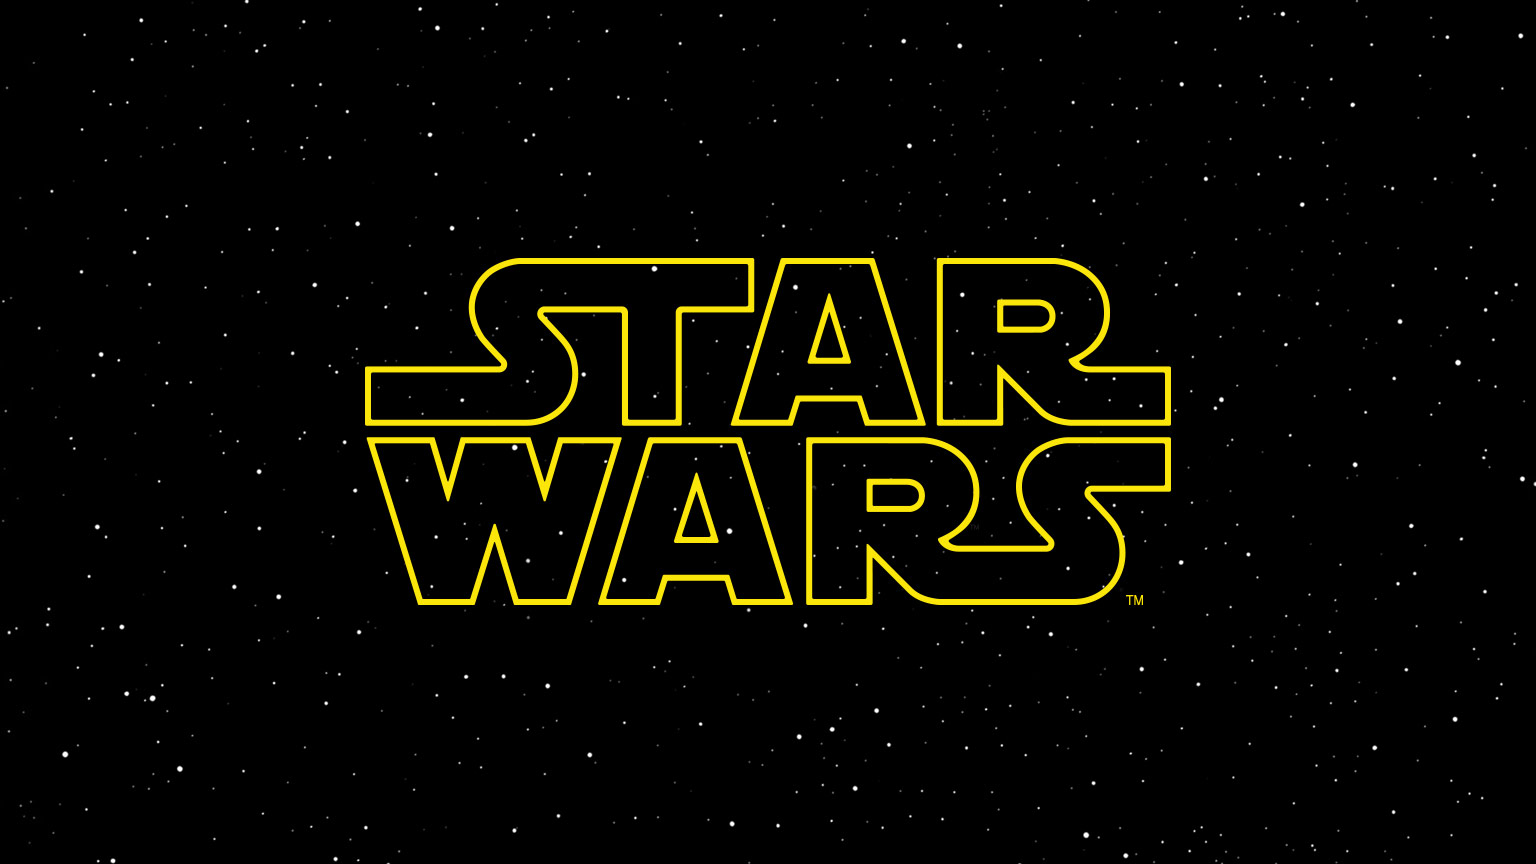 Star wars logo new tall